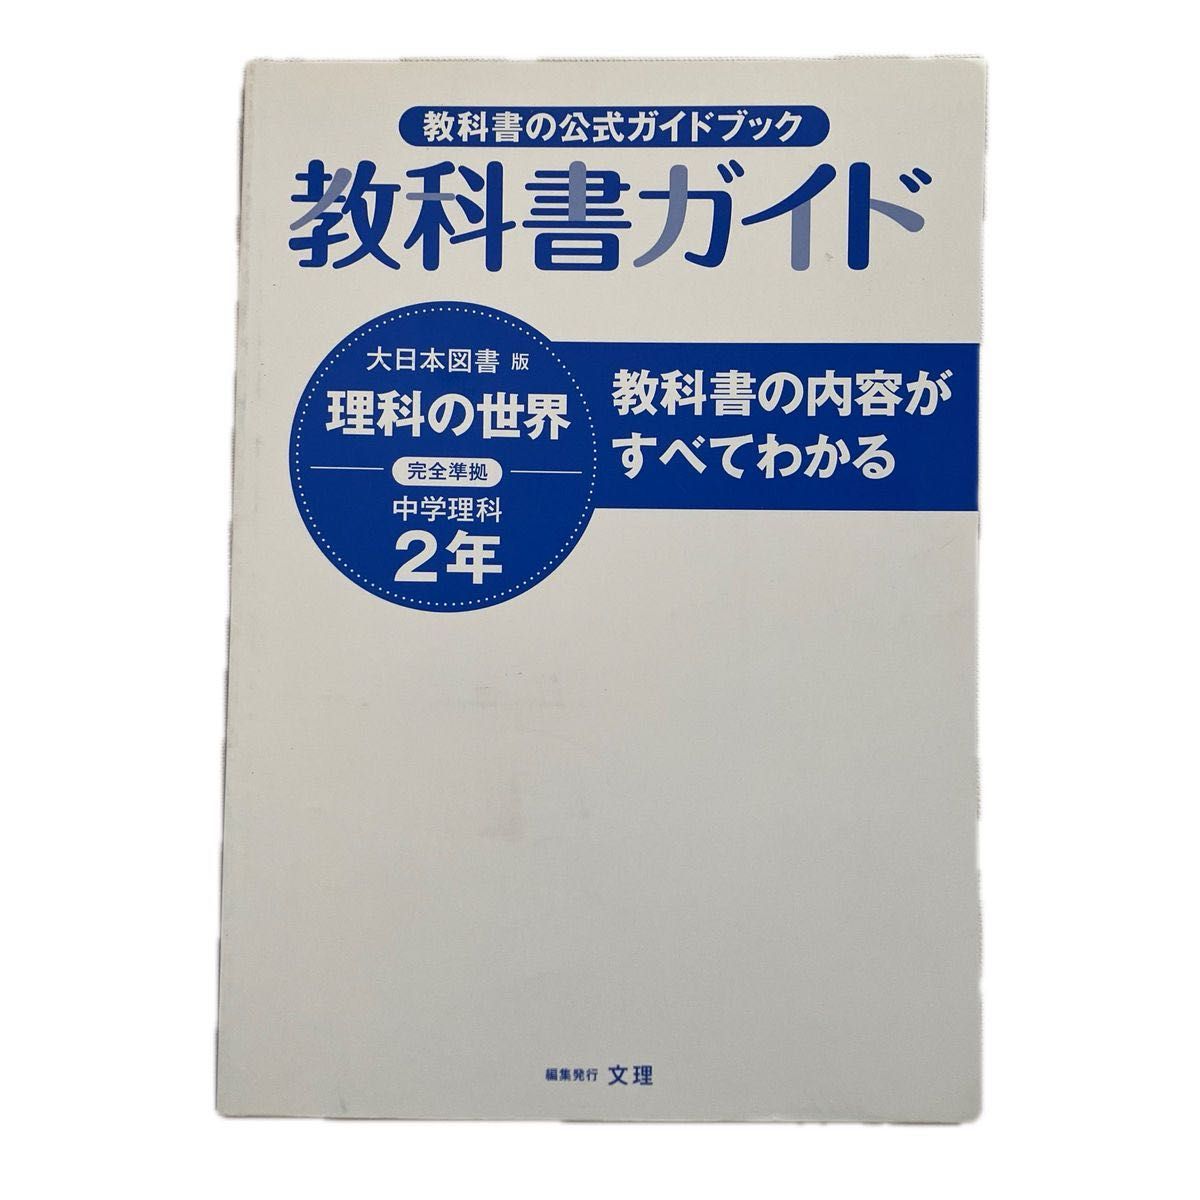 最新 教科書ガイド 大日本図書 版 理科の世界 完全準拠 中学理科 2年